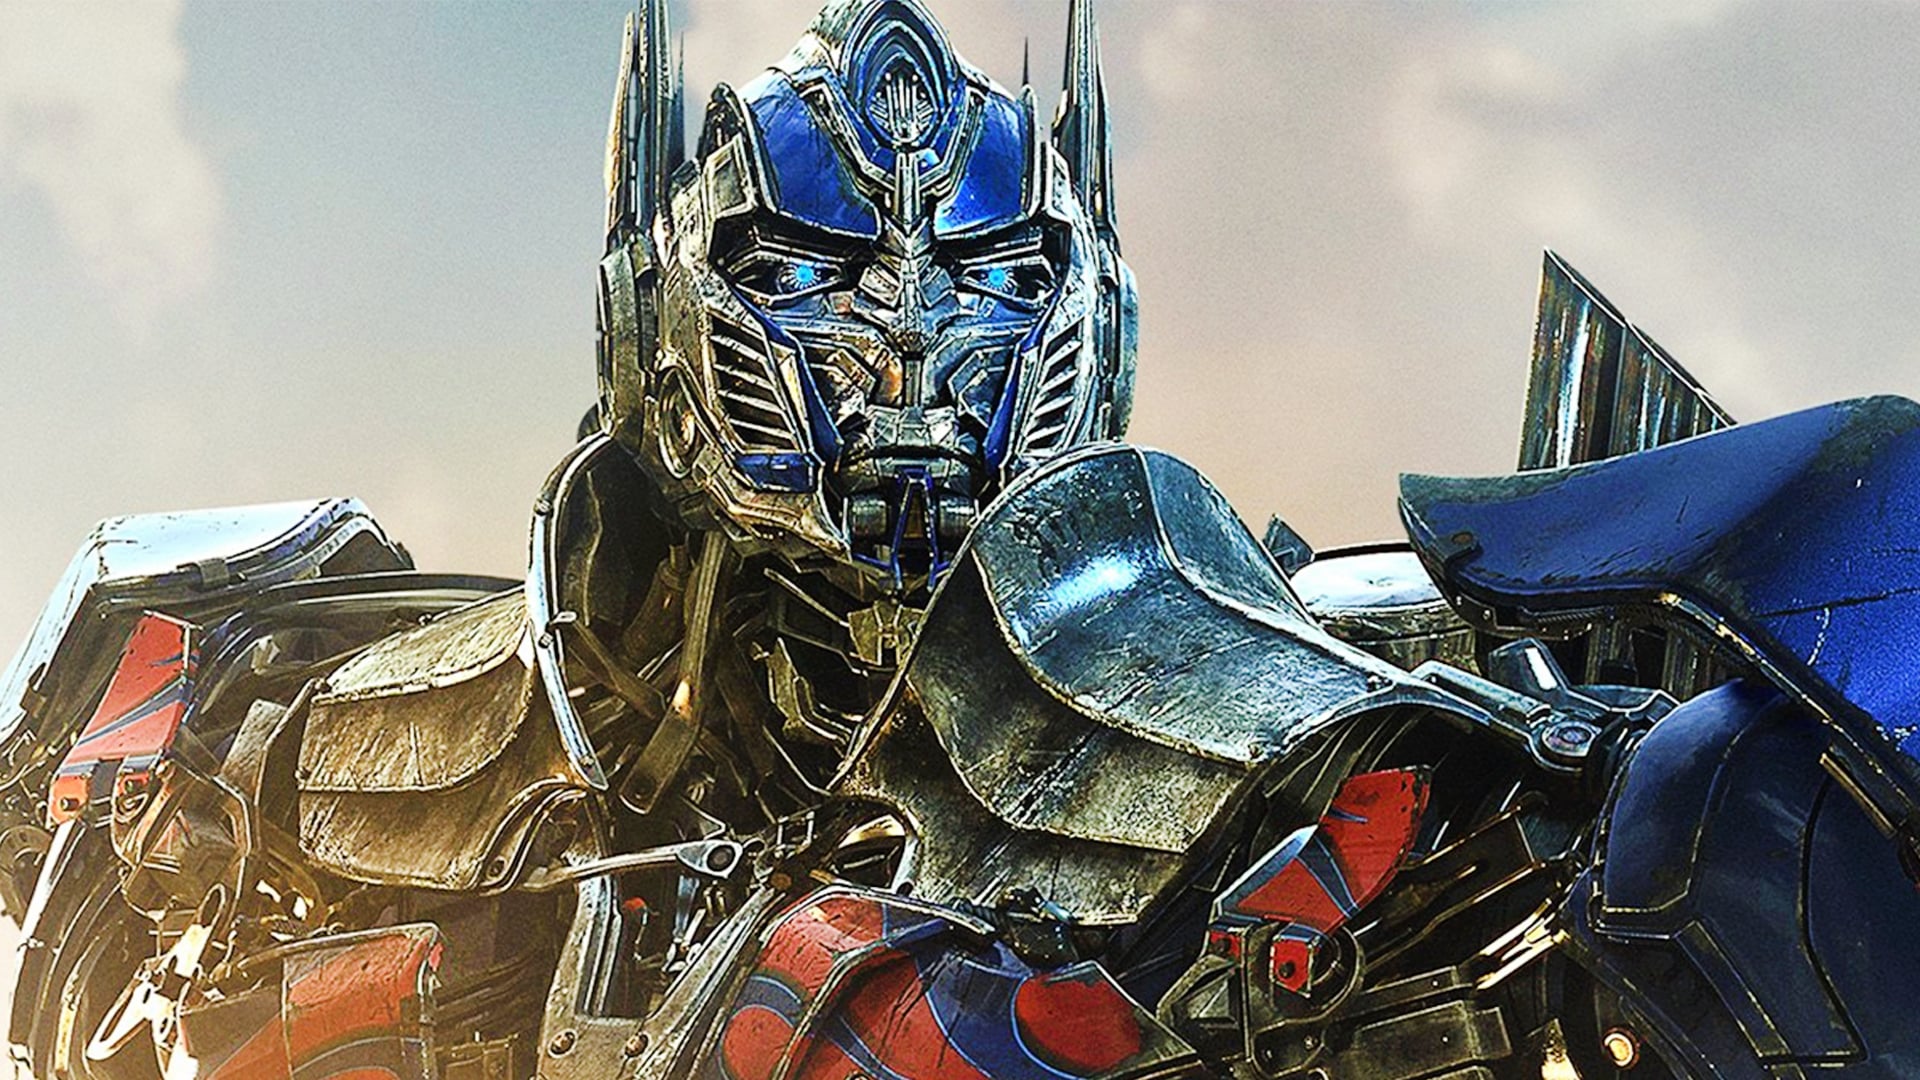 Štúdio Paramount práve zrušilo Transformers 6!